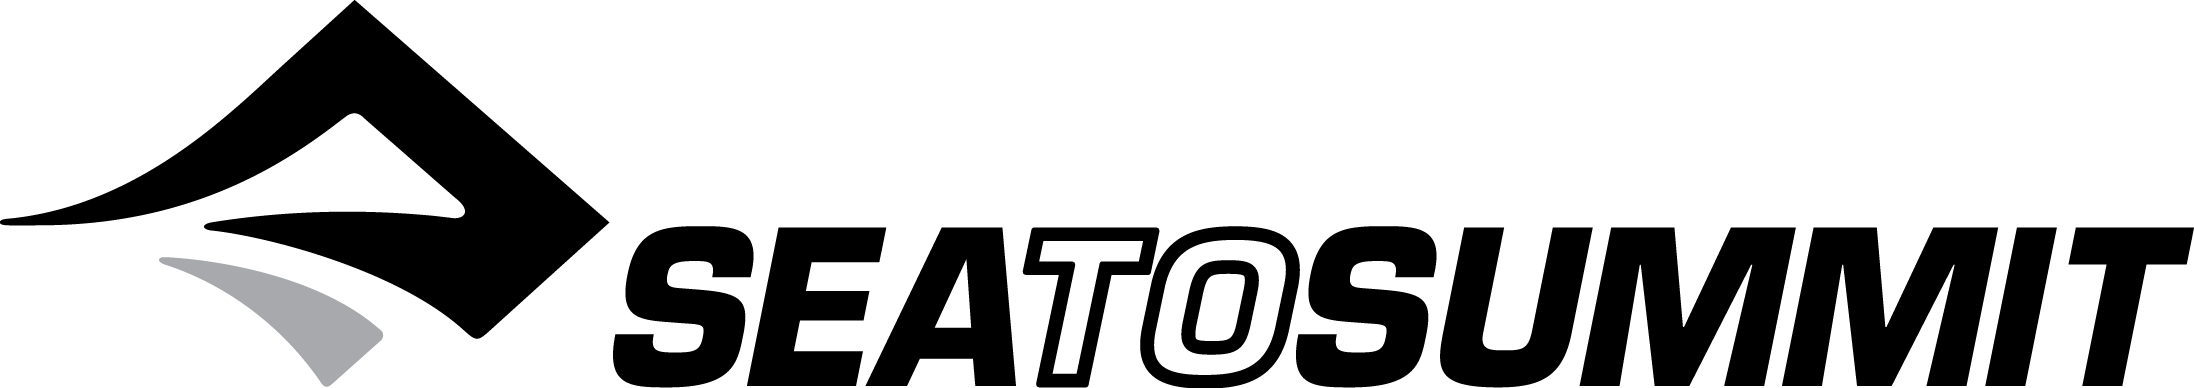 Seatosummit logo